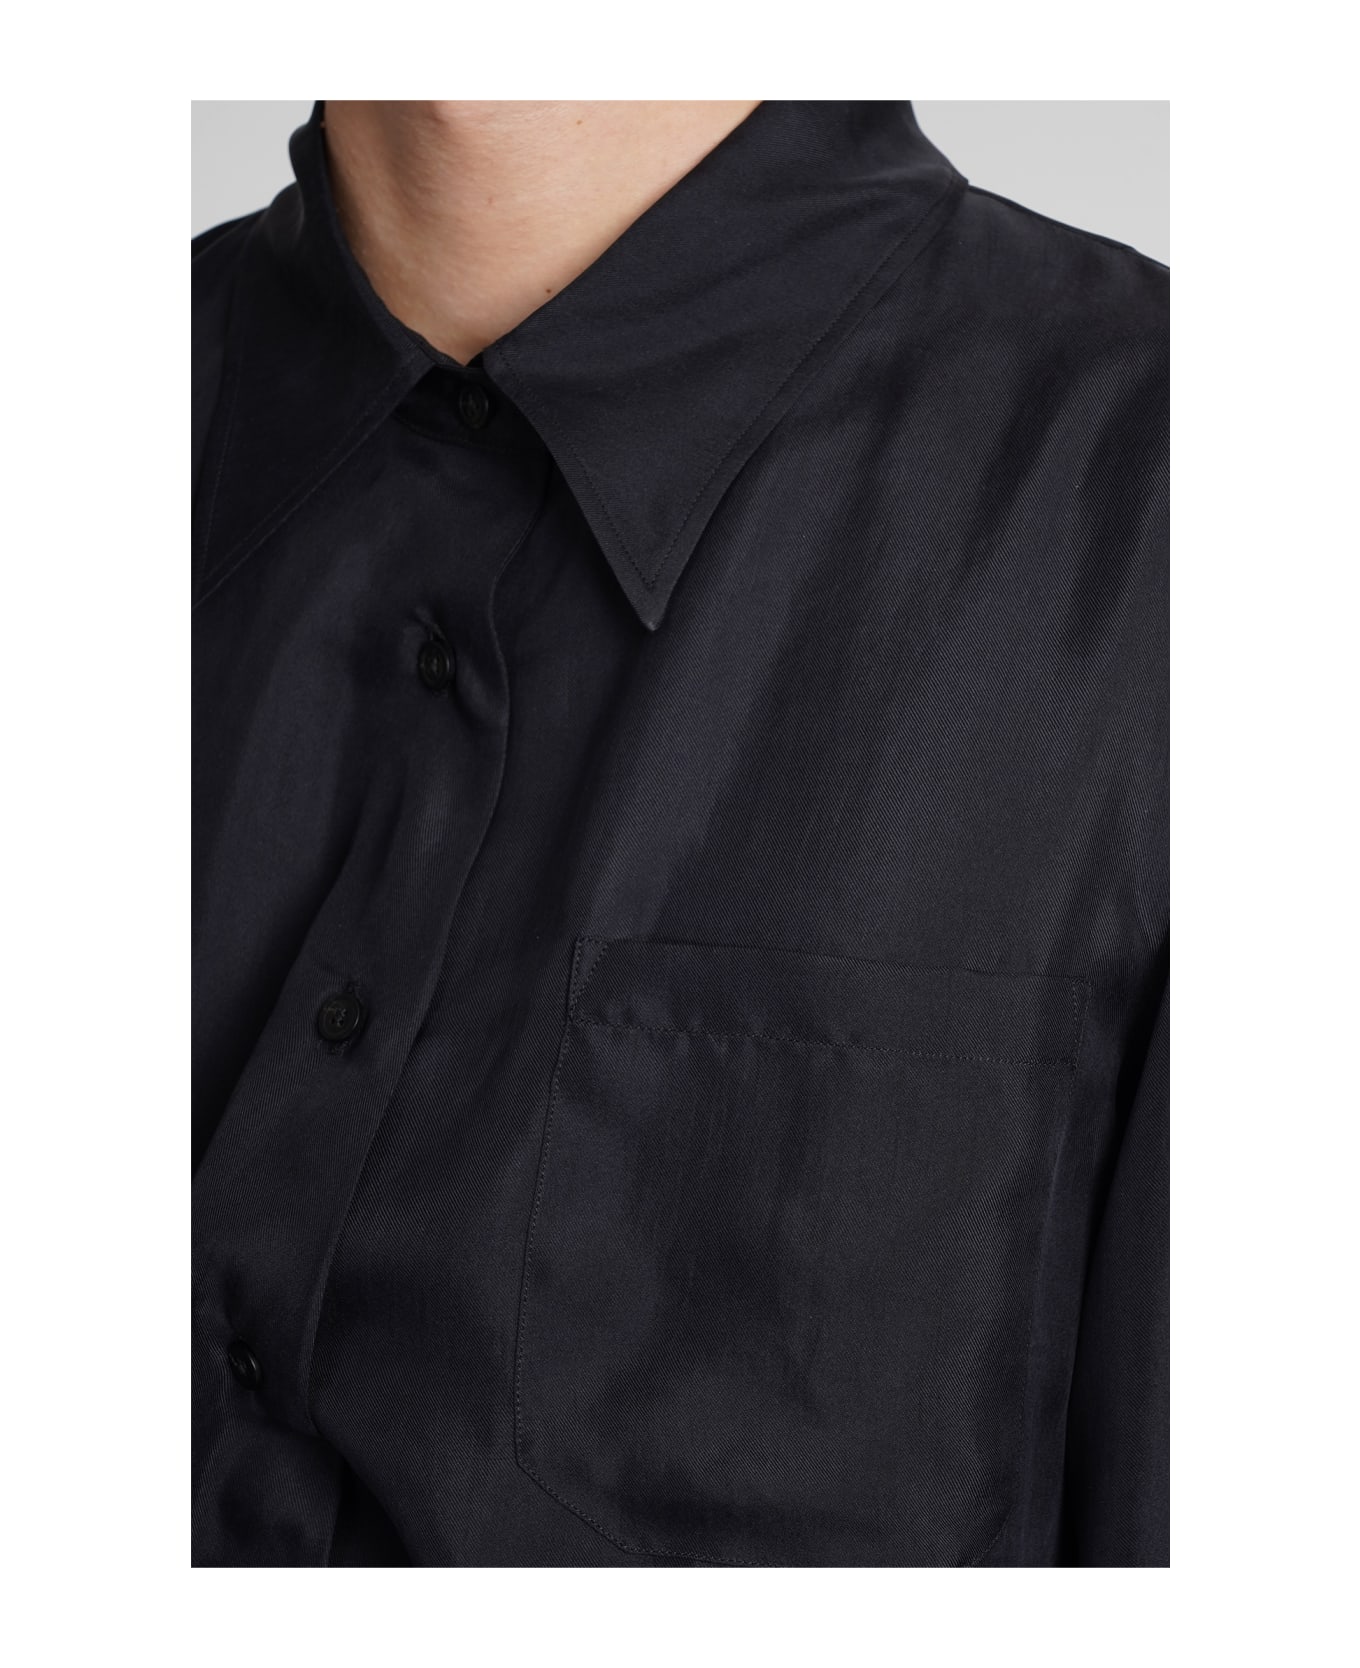 Ann Demeulemeester Shirt In Black Silk - black シャツ